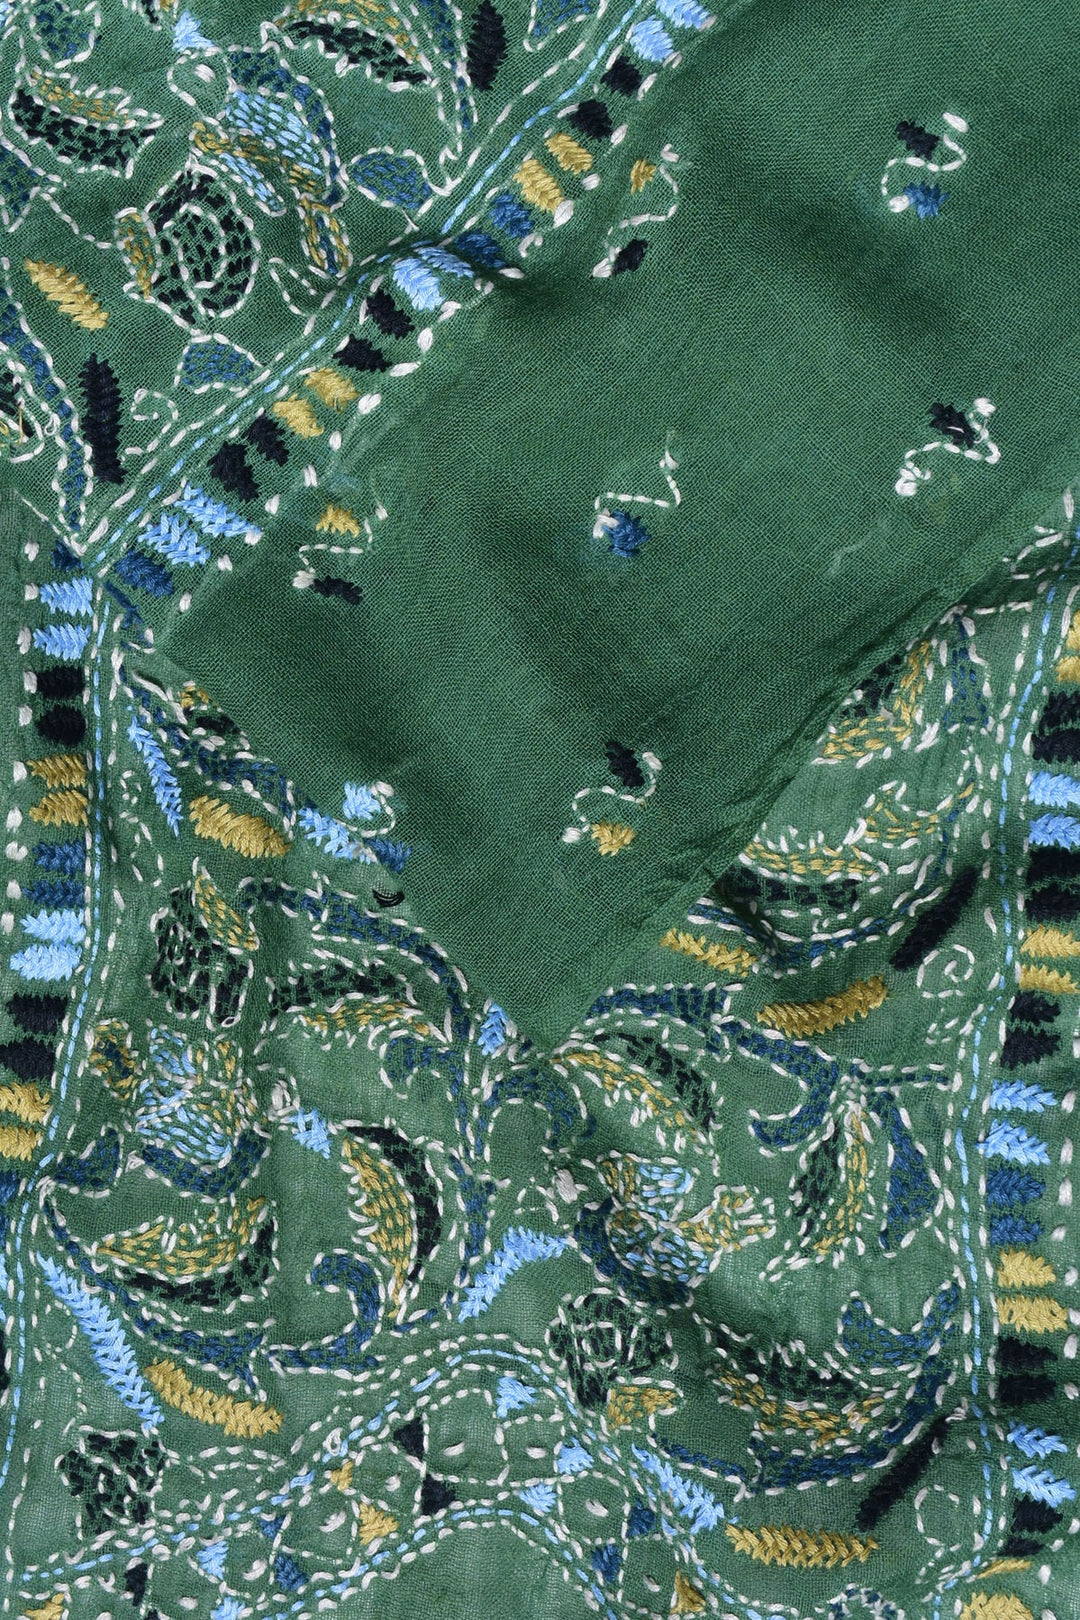 Sageus Cashmere Stole: Handwoven Sage Green Scarf with Embroidery | Sageus Handwoven Soft Cashmere Stole - Green